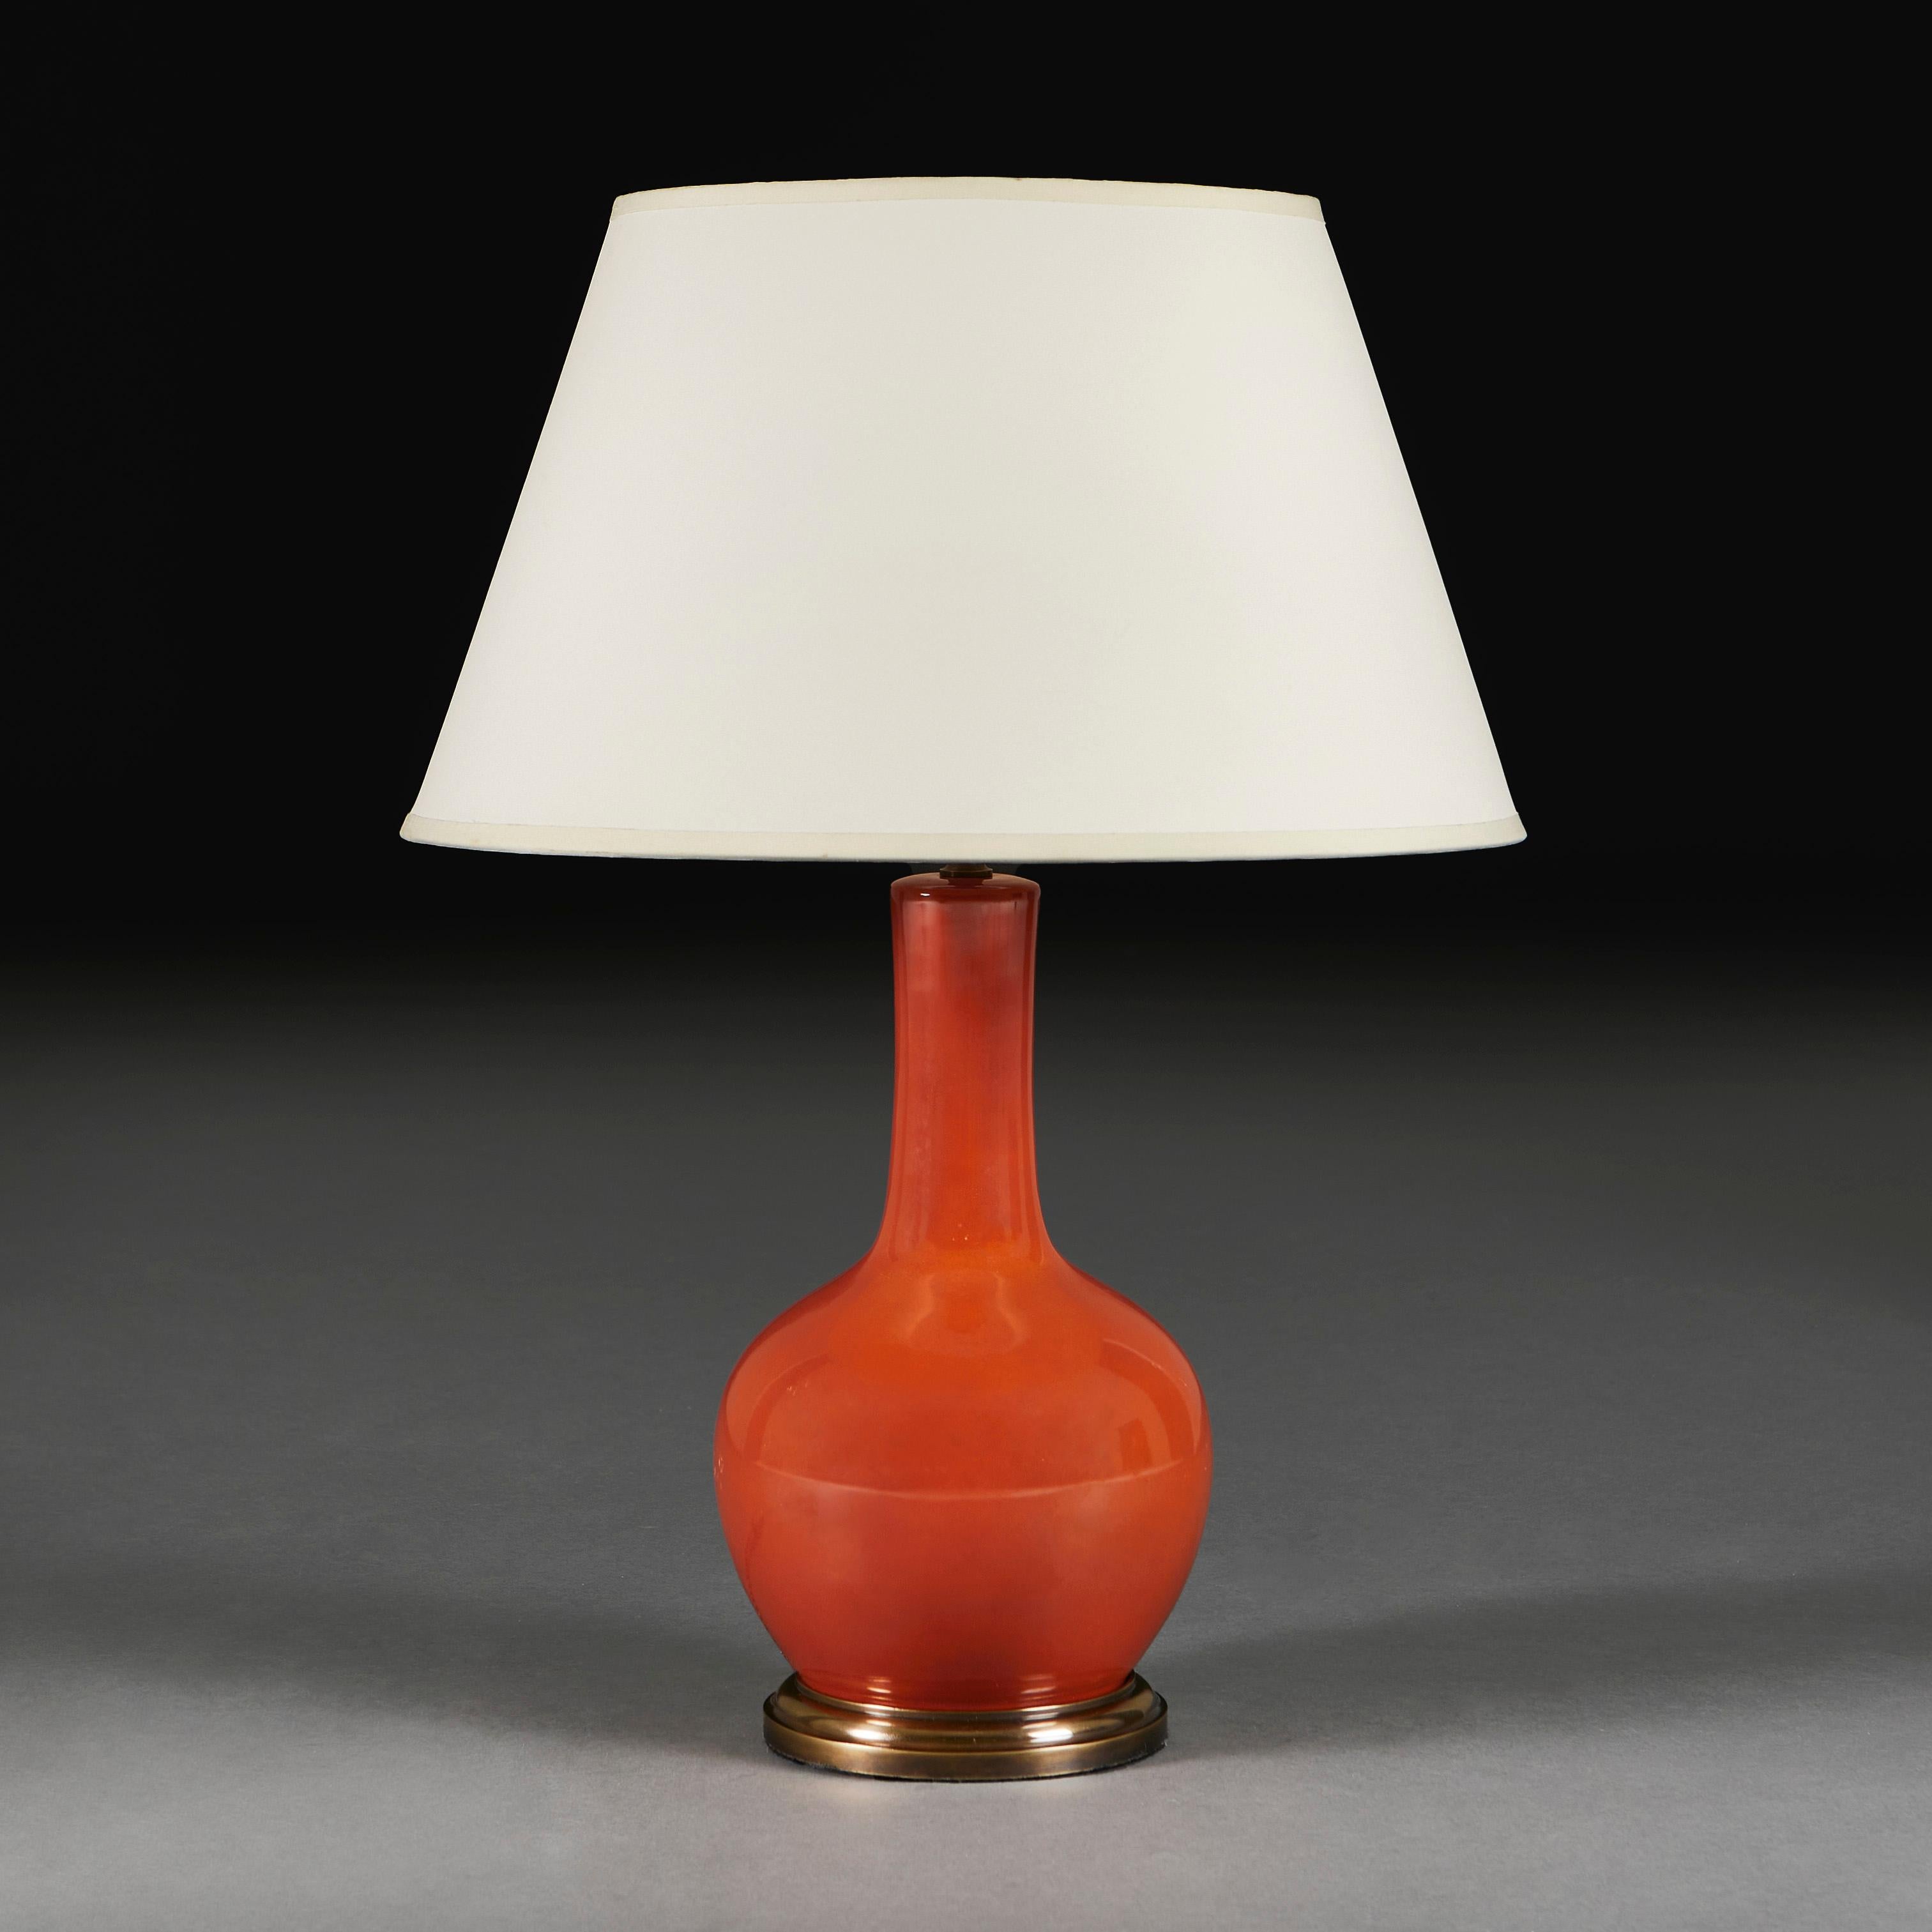 Chine, vers 1940

Vase chinois monochrome du XXe siècle à glaçure rouge-ombre, de forme bouteille, actuellement monté comme lampe sur une base en laiton tourné et patiné.

Hauteur du vase   32.00cm
Hauteur avec abat-jour    57.00cm
Diamètre de la